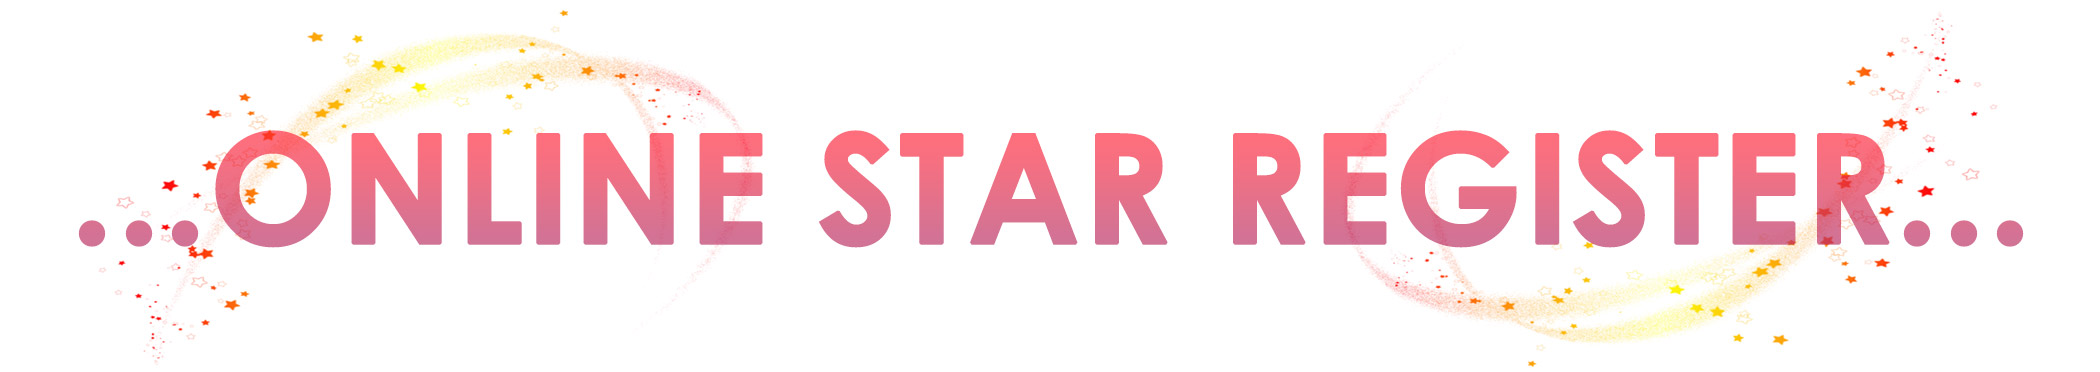 comprare una stella online star register